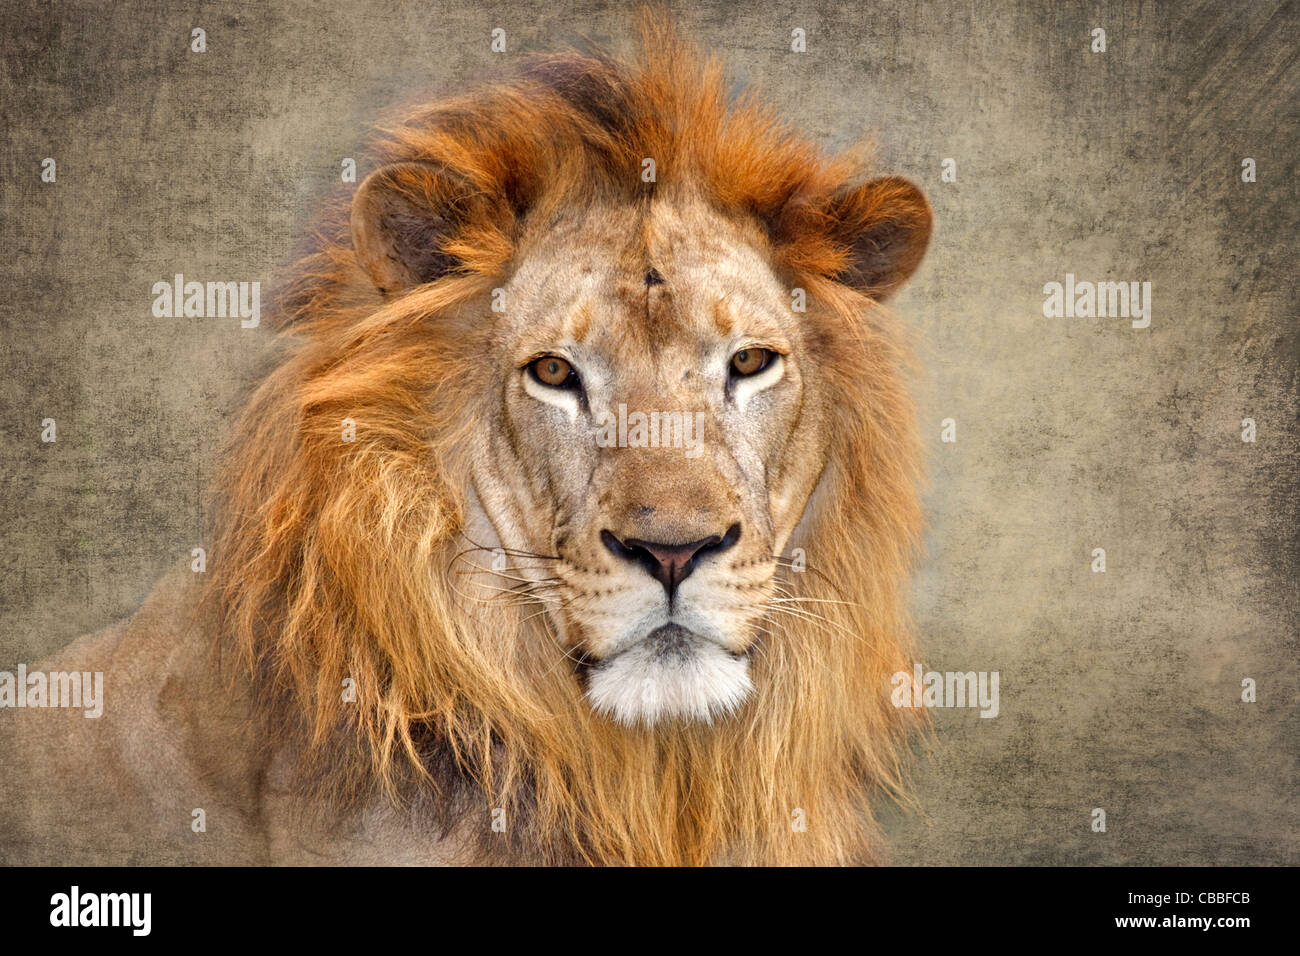 Portrait of a lion. Stock Photo